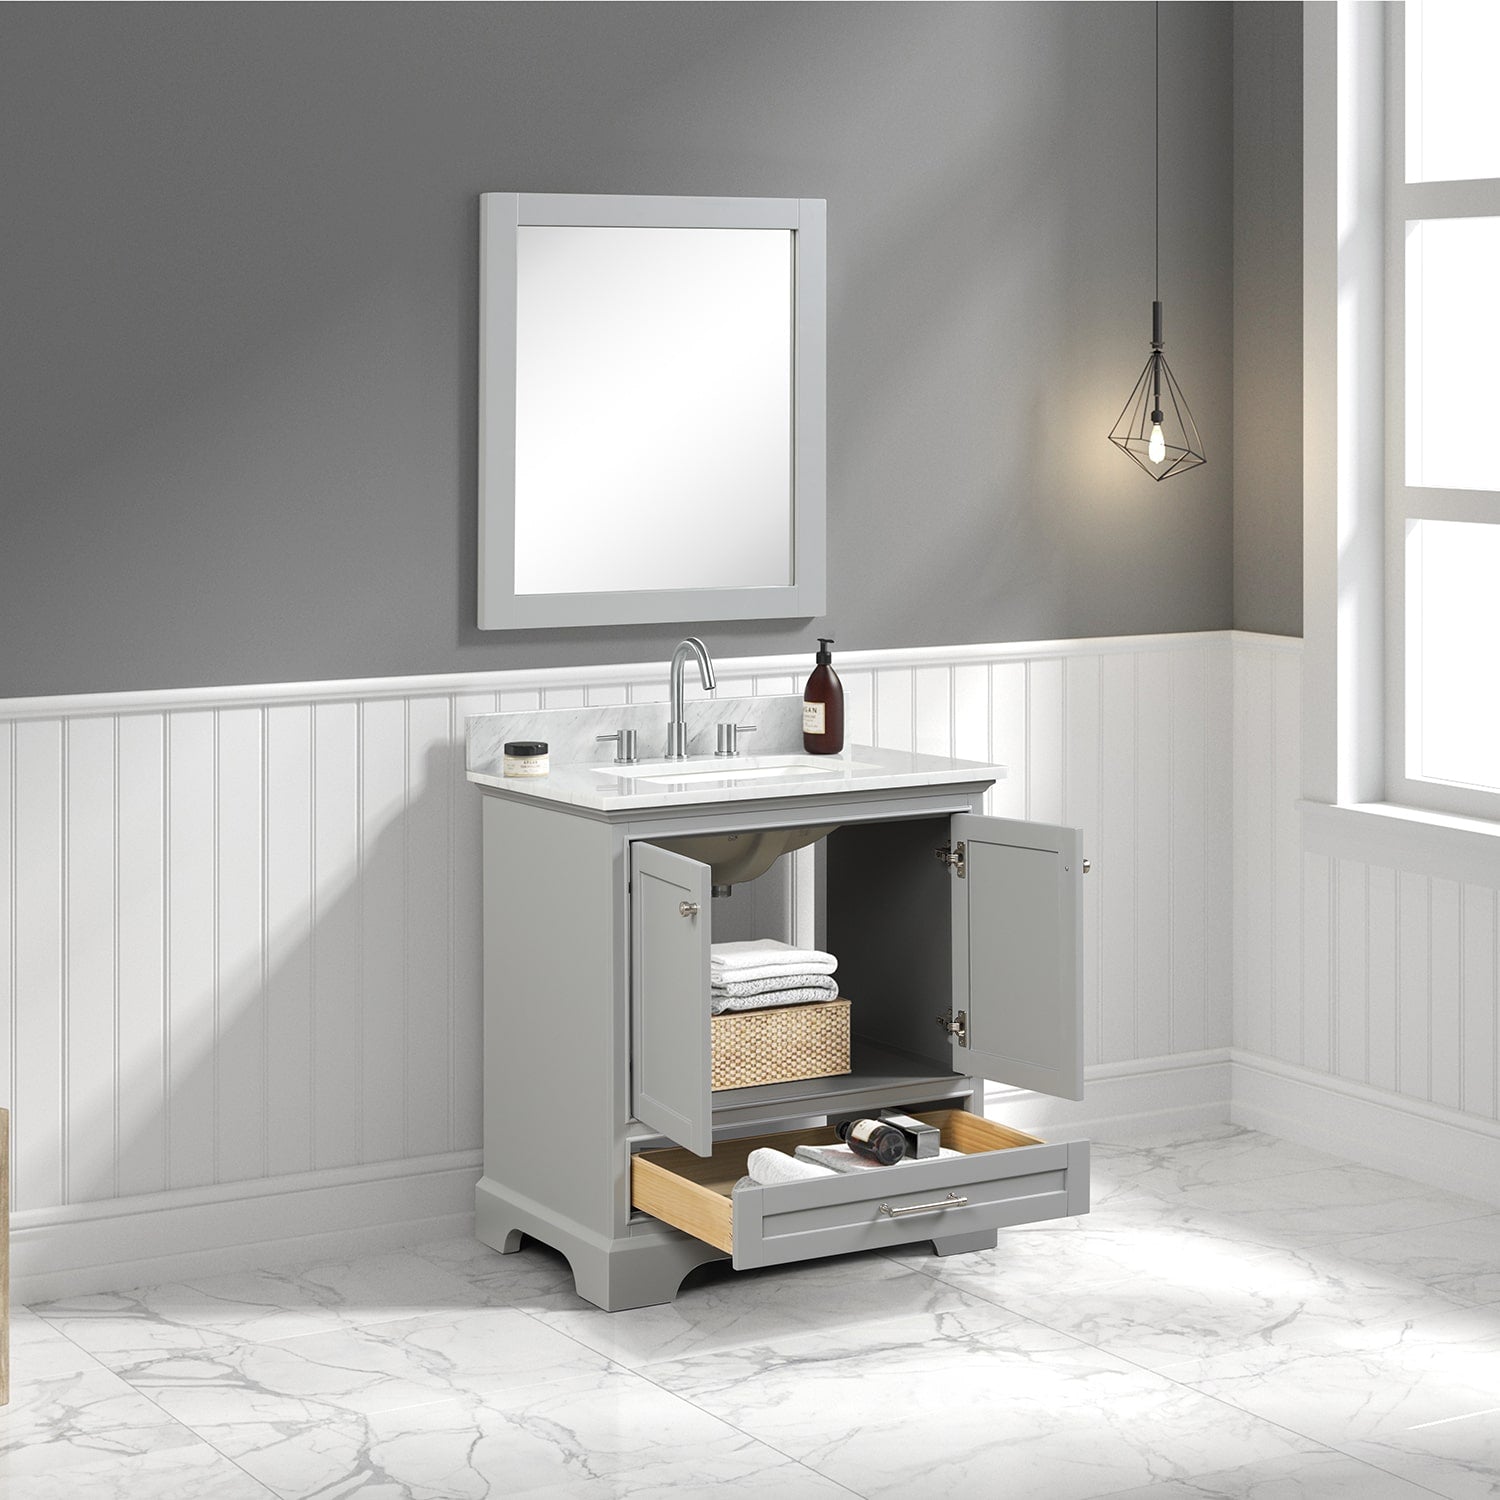 Copenhagen 30″ Bathroom Vanity with Marble Countertop - Contemporary Bathroom Vanity